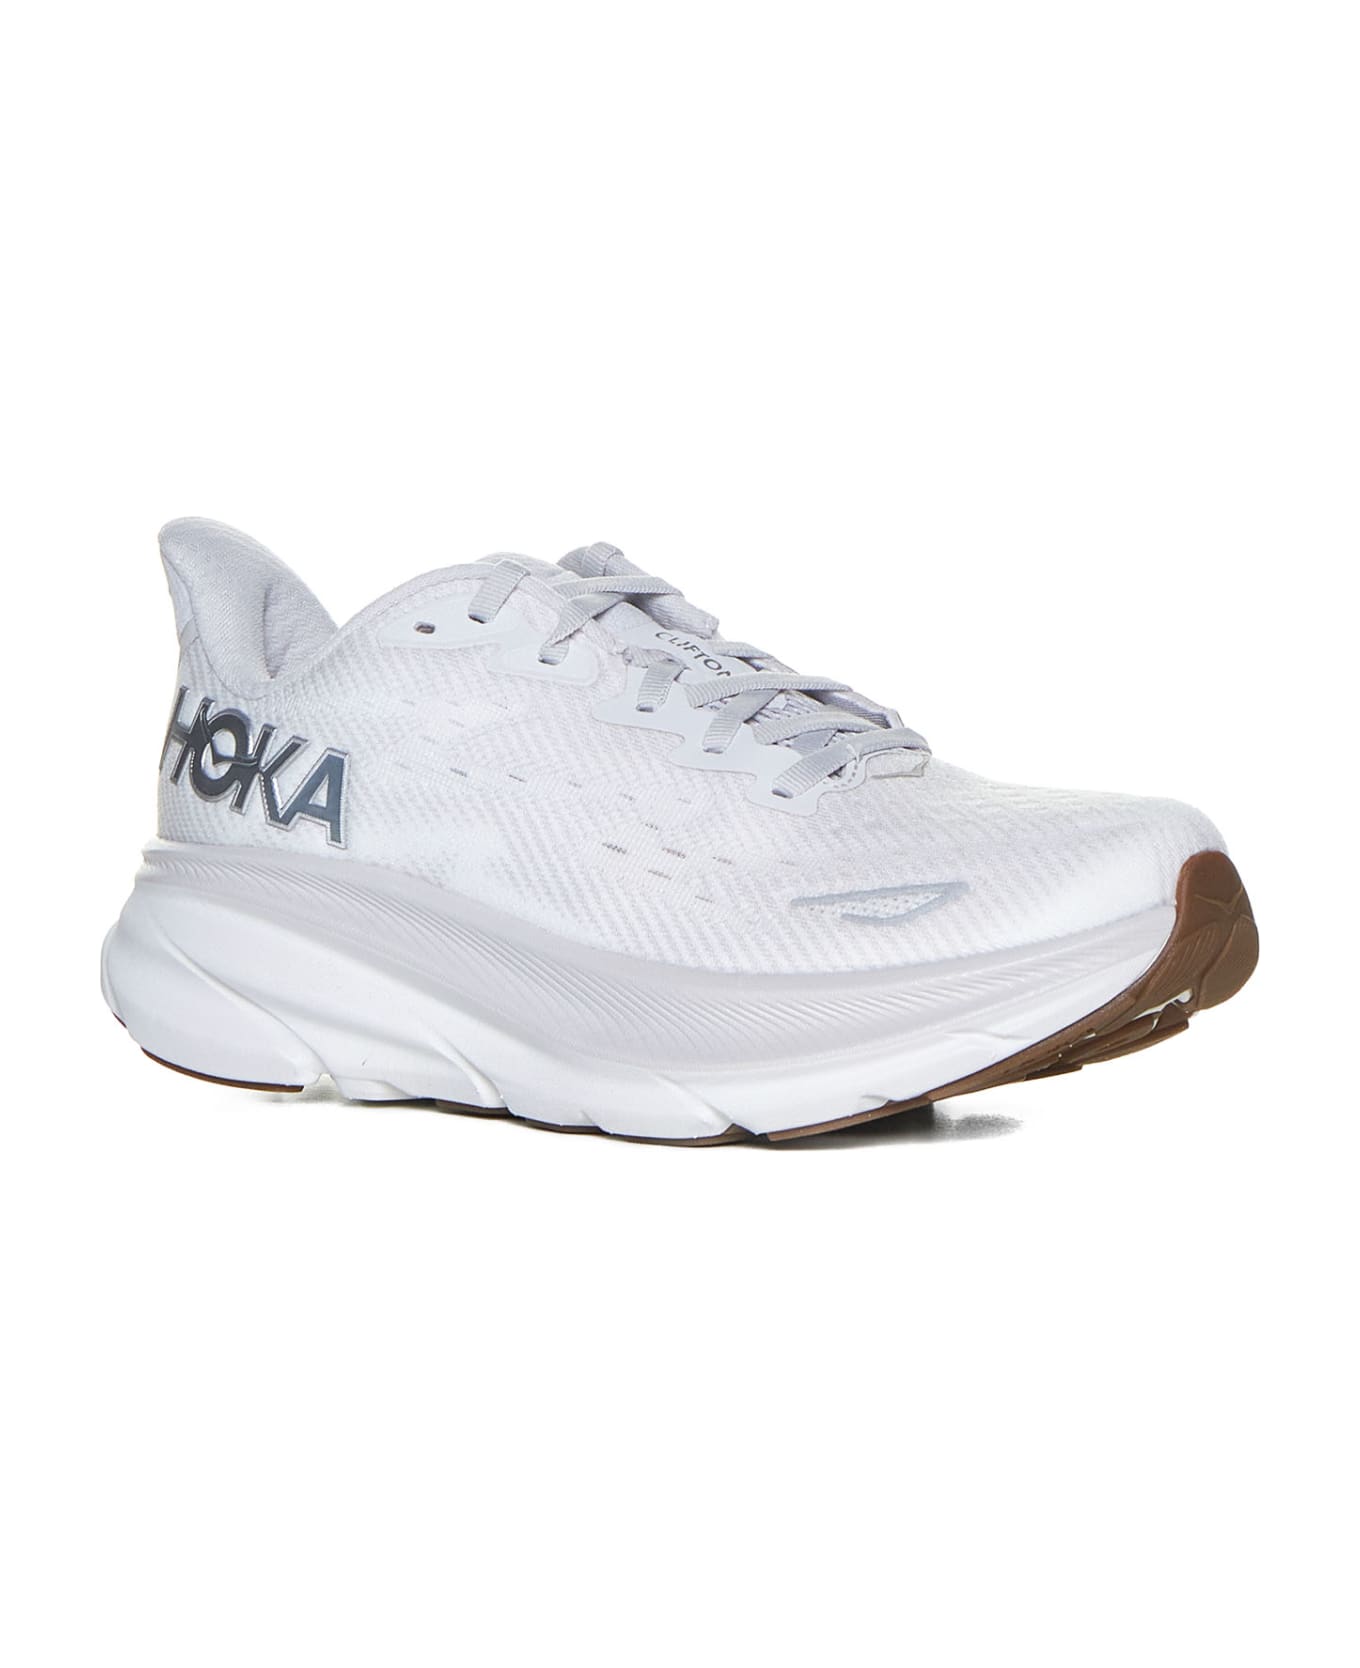 Hoka Sneakers - Nimbus cloud / white